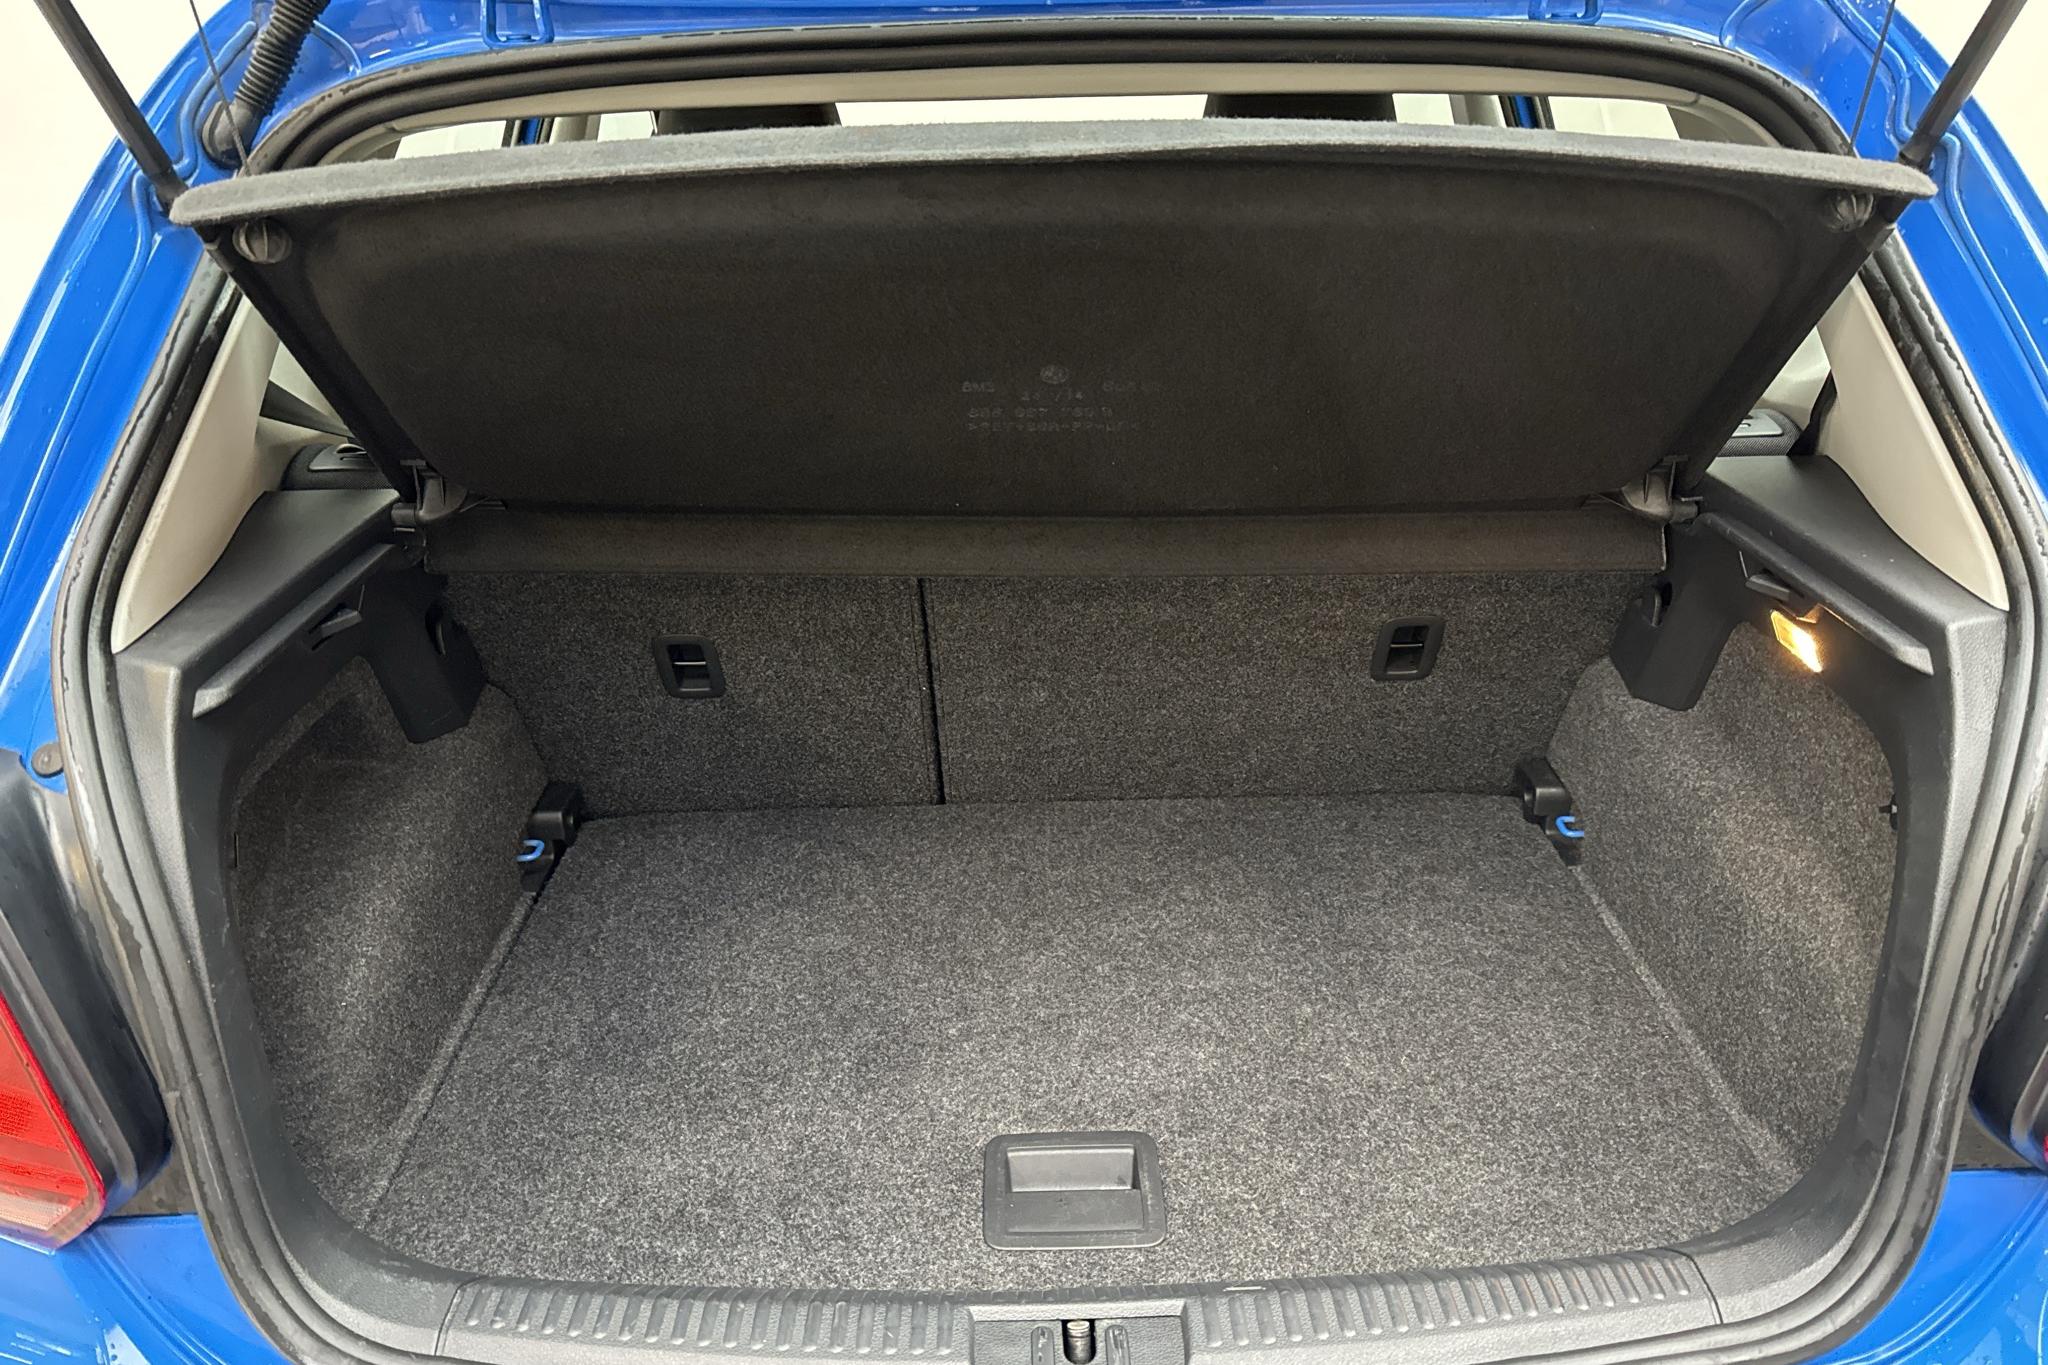 VW Polo 1.2 TSI 5dr (90hk) - 13 626 mil - Manuell - blå - 2015